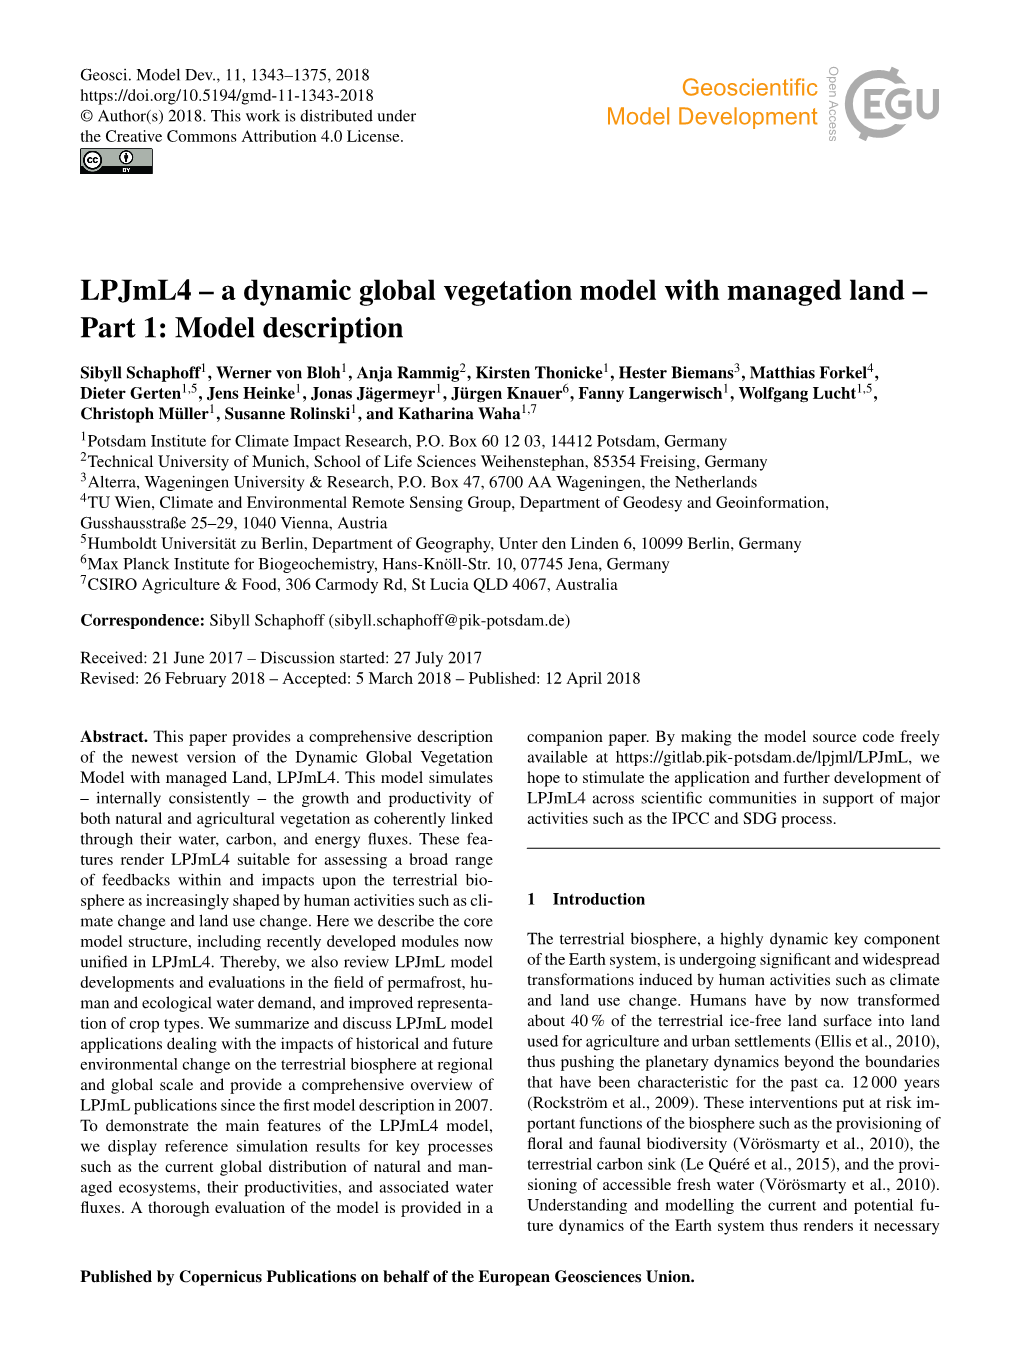 A Dynamic Global Vegetation Model with Managed Land – Part 1: Model Description